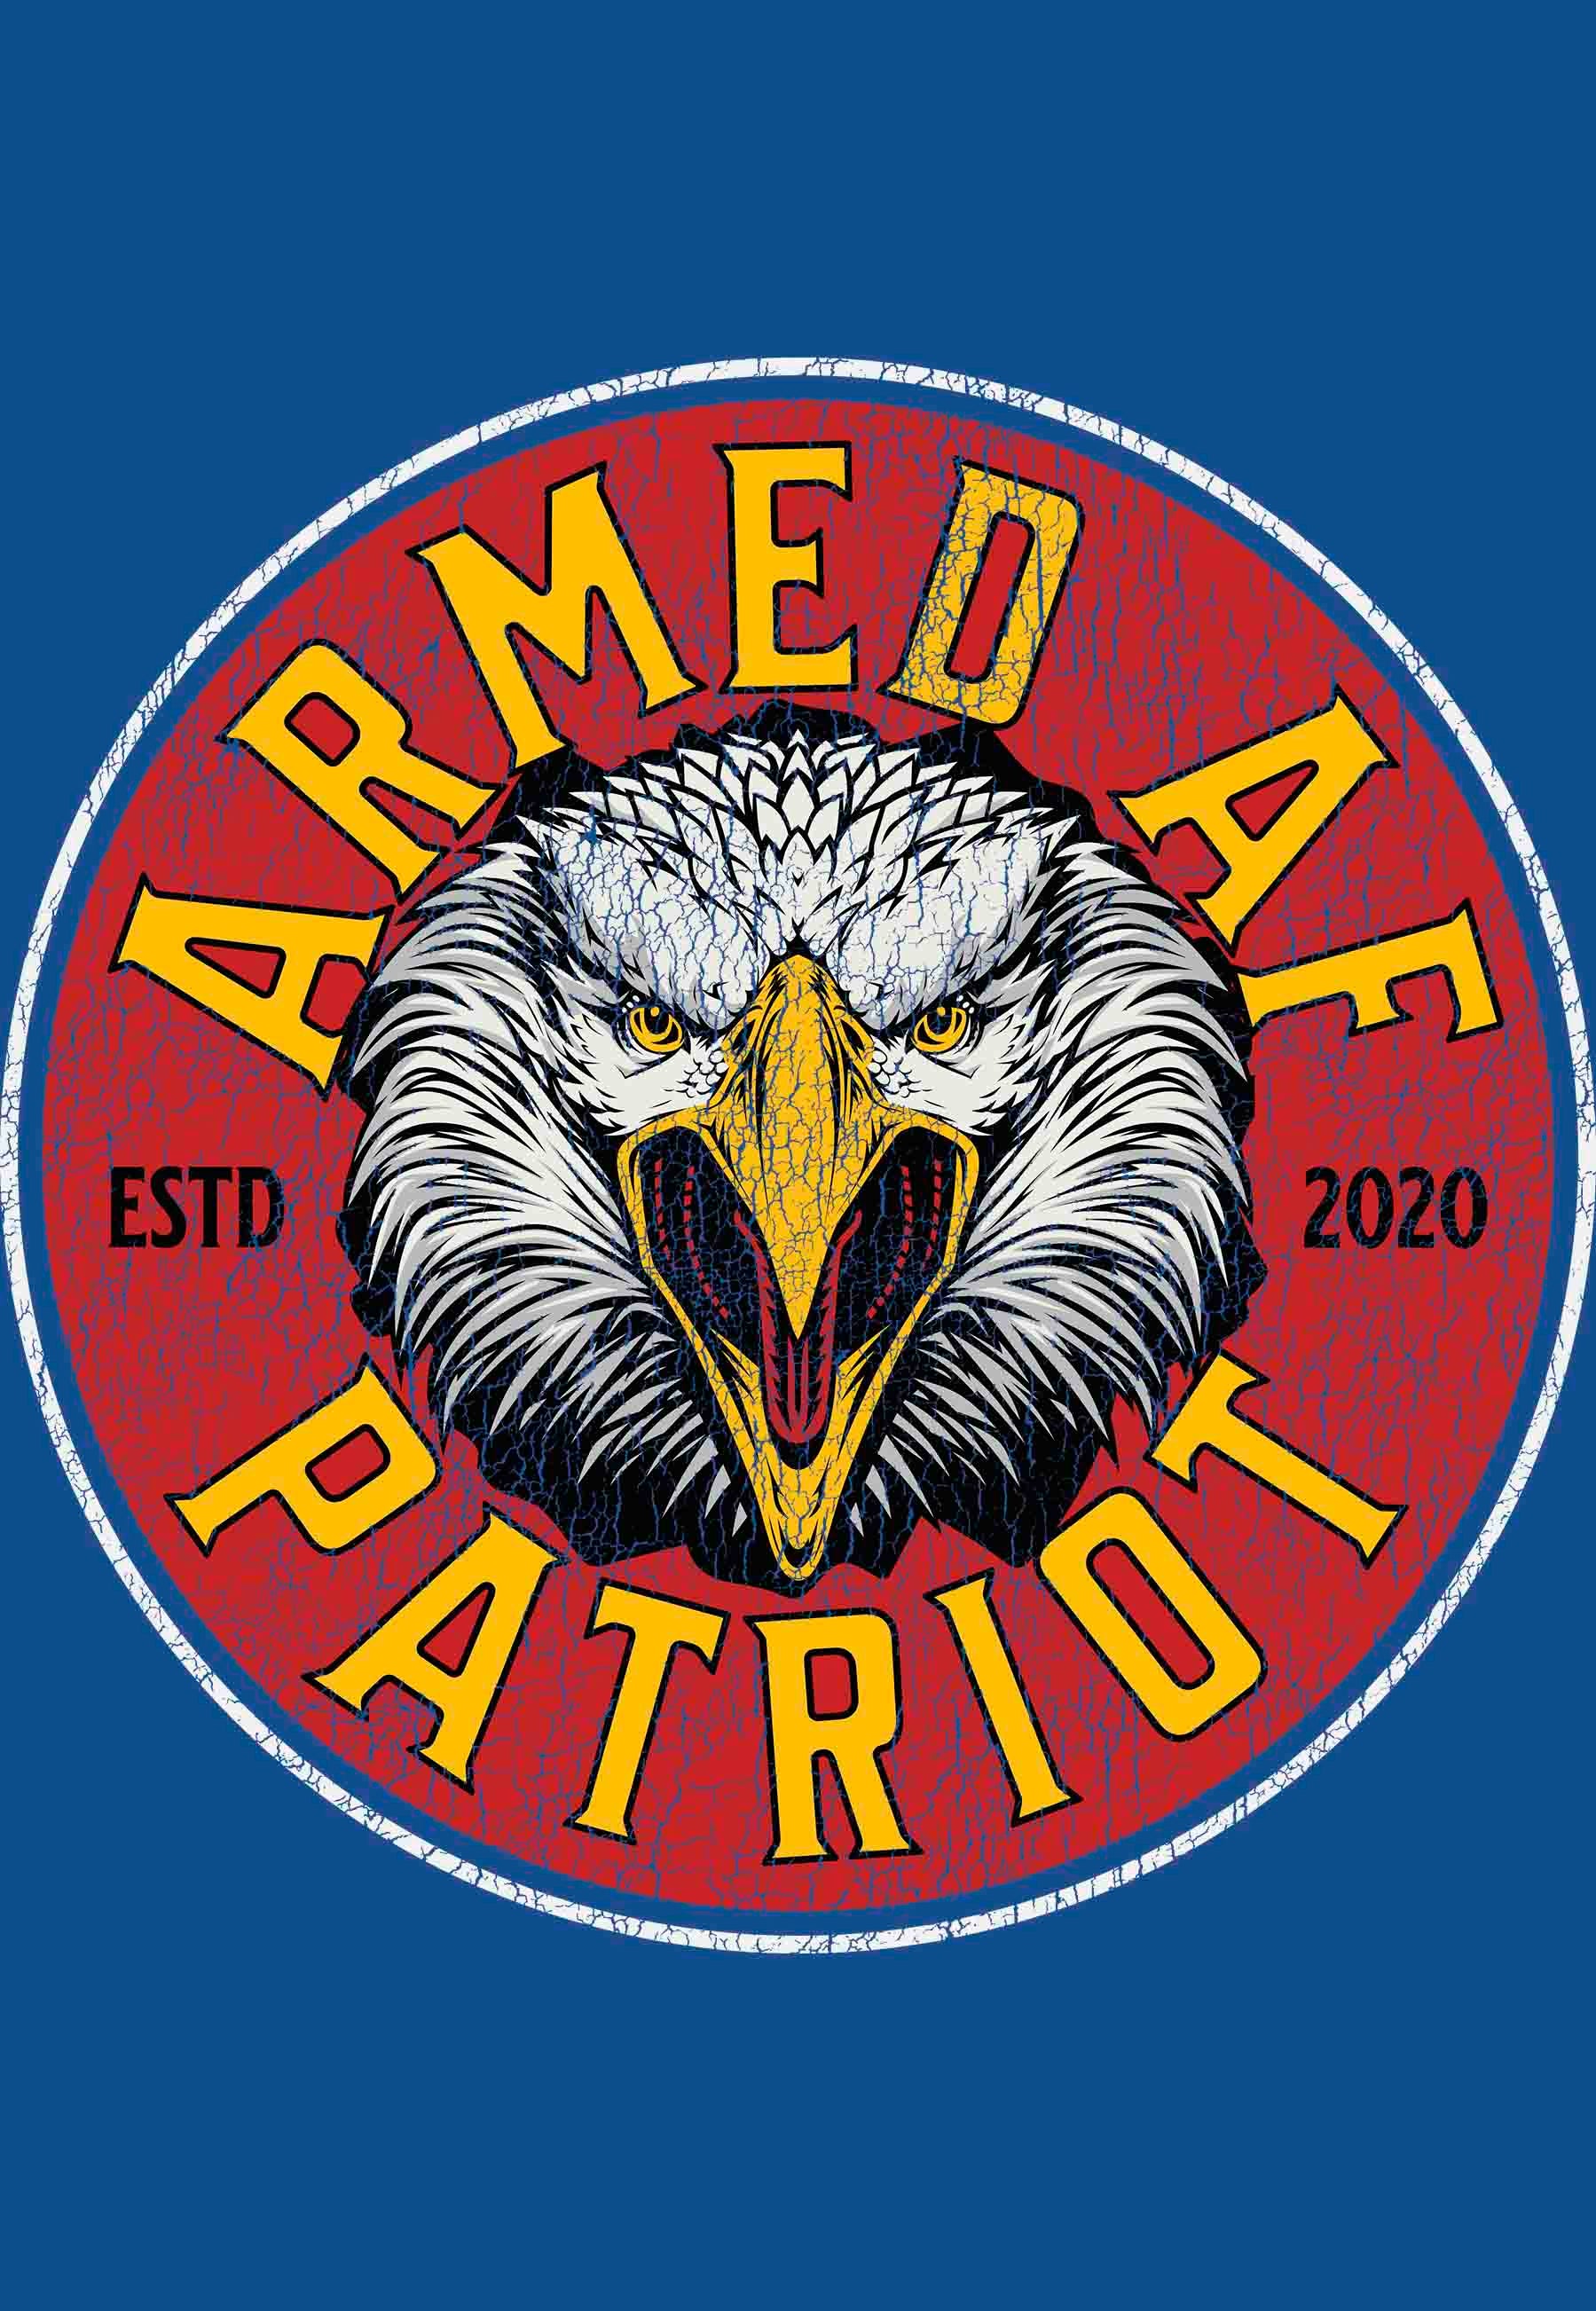 ArmedAF® Patriot eagle t-shirt – Teeslanger